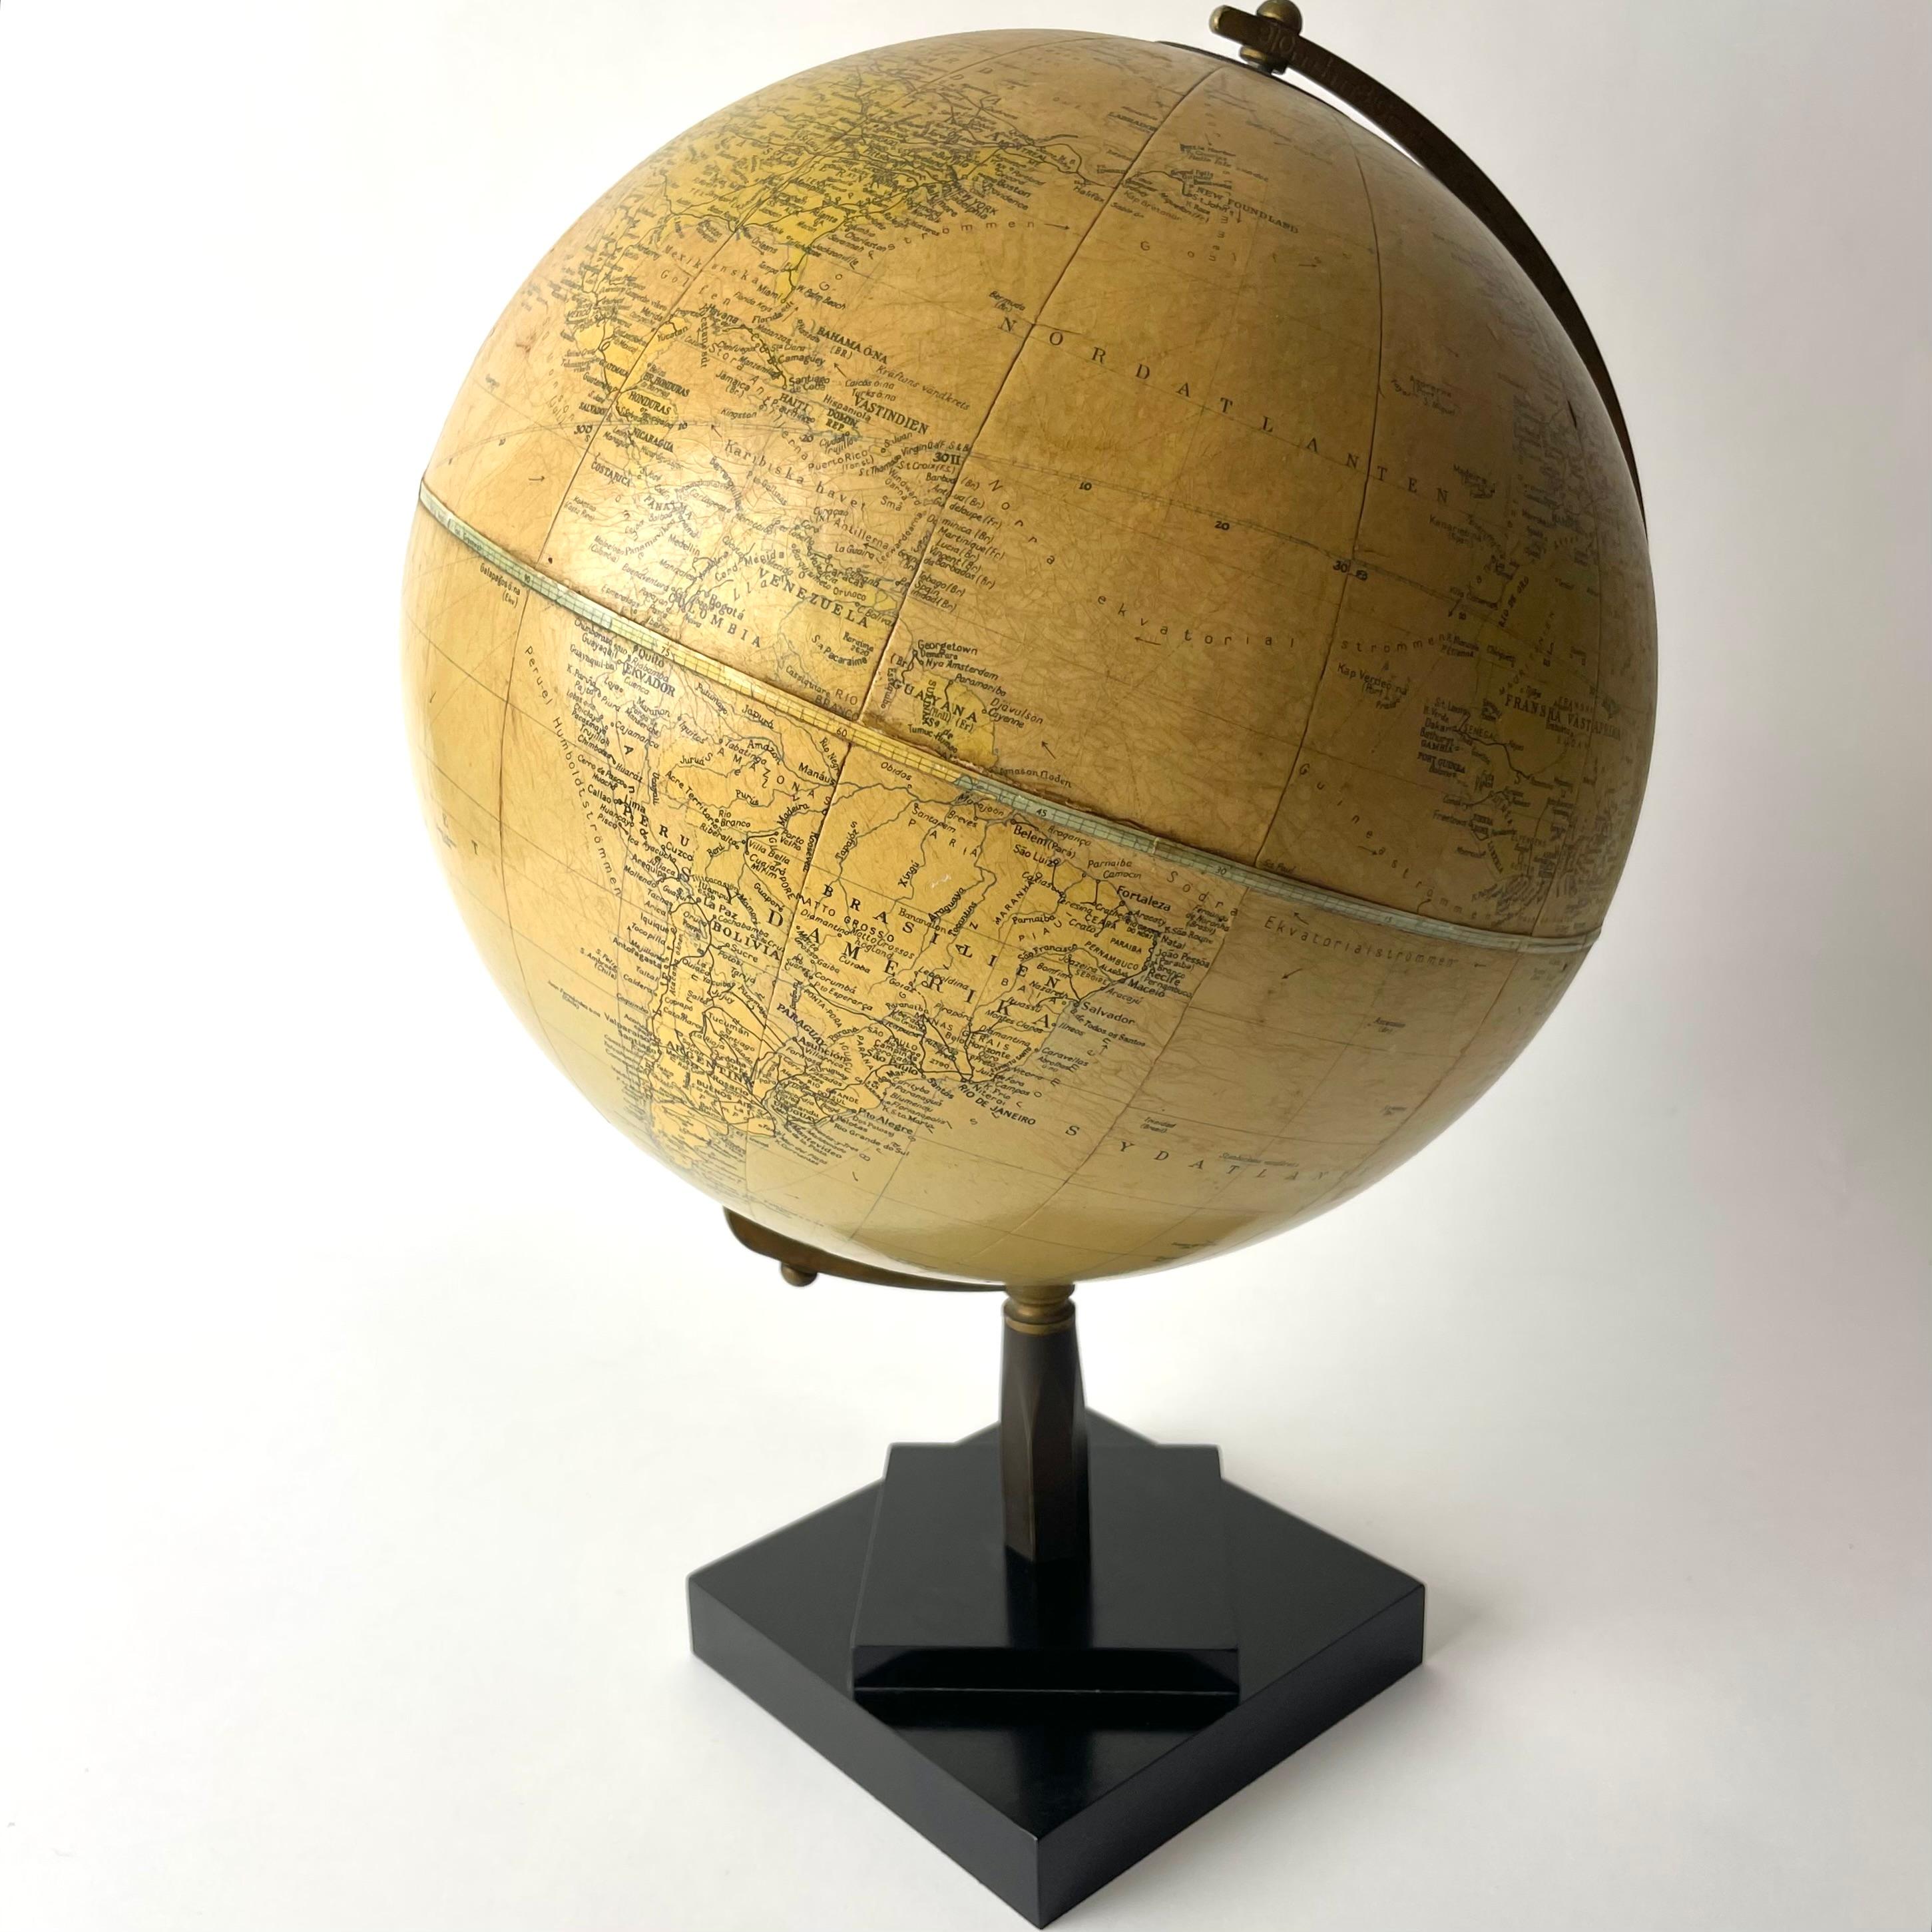 Globus aus Bakelit und Messing aus den 1930er Jahren, hergestellt von Philips für die schwedische Organisation Folket i Bild, die für die Förderung von Volksbildung, bürgerlicher Demokratie und Engagement bekannt ist. Zeigt die Welt vor dem Zweiten